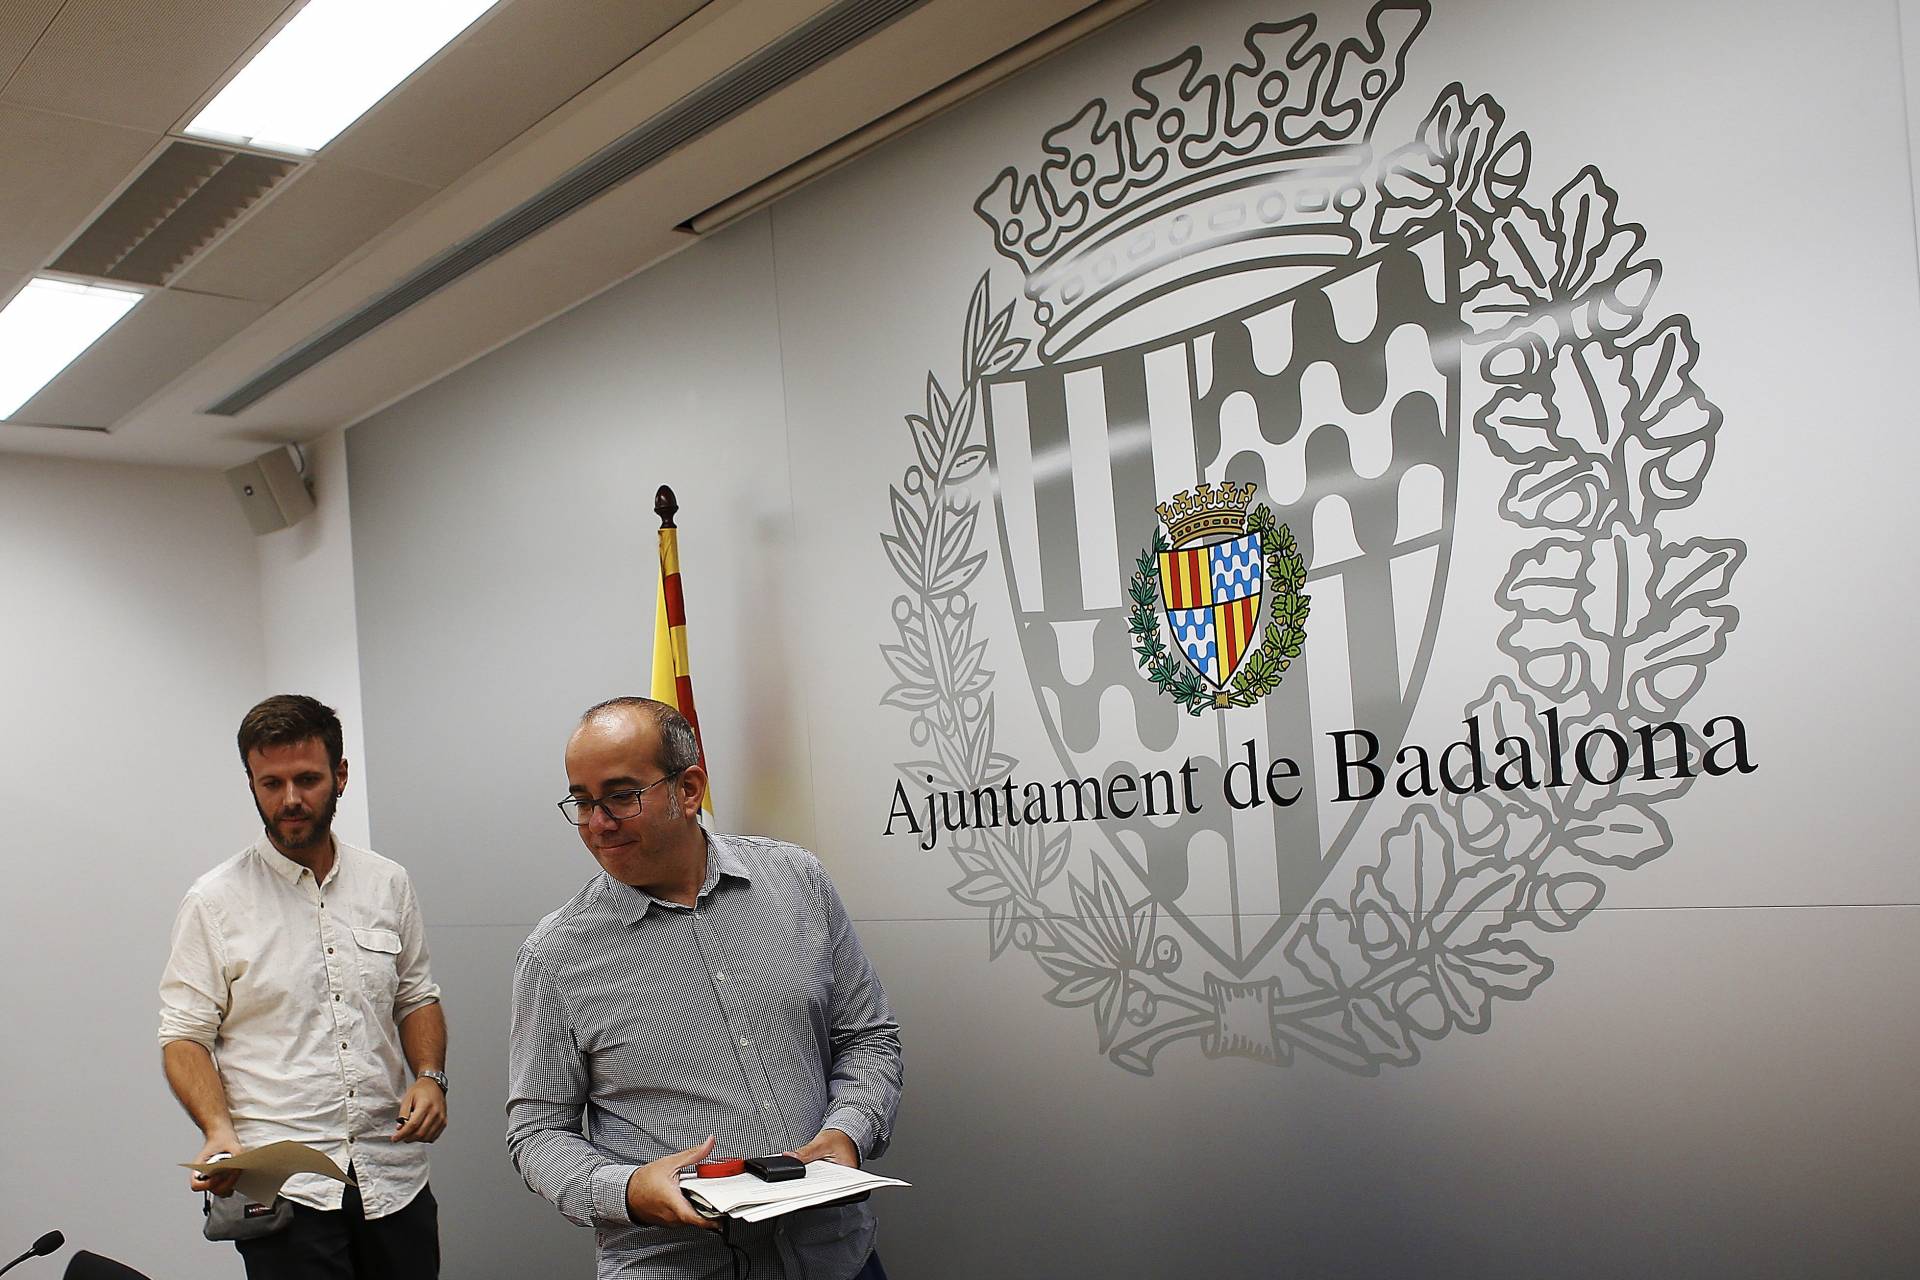 El Ayuntamiento de Badalona invoca ante el juez la libertad ideológica de la Constitución